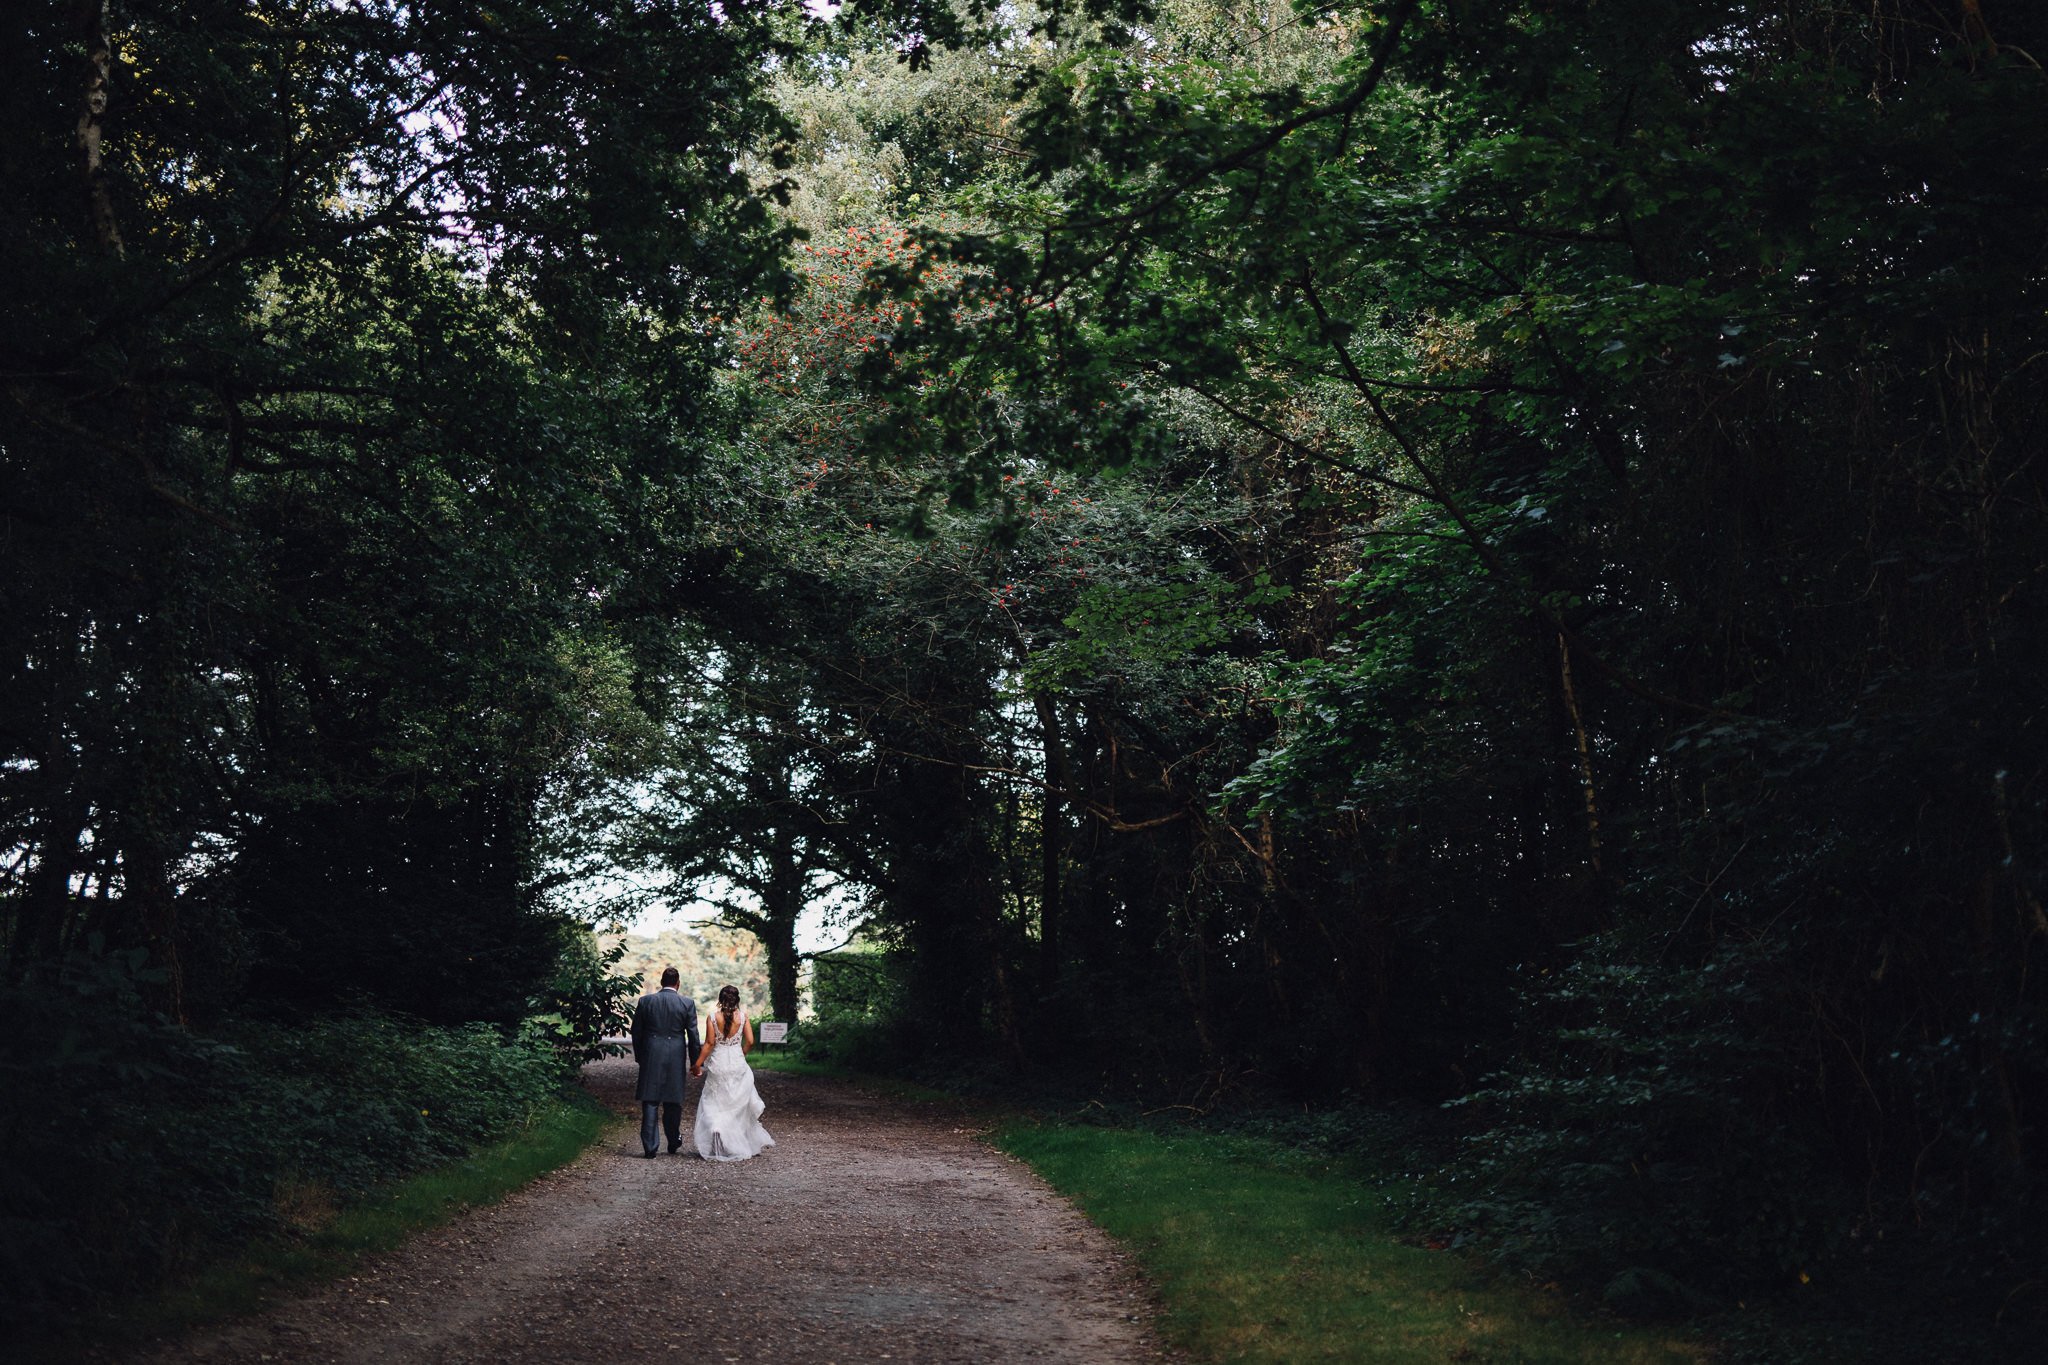  Bride and Groom walk through a wooded area on their wedding day  at Walton Heath Golf Club Surrey 